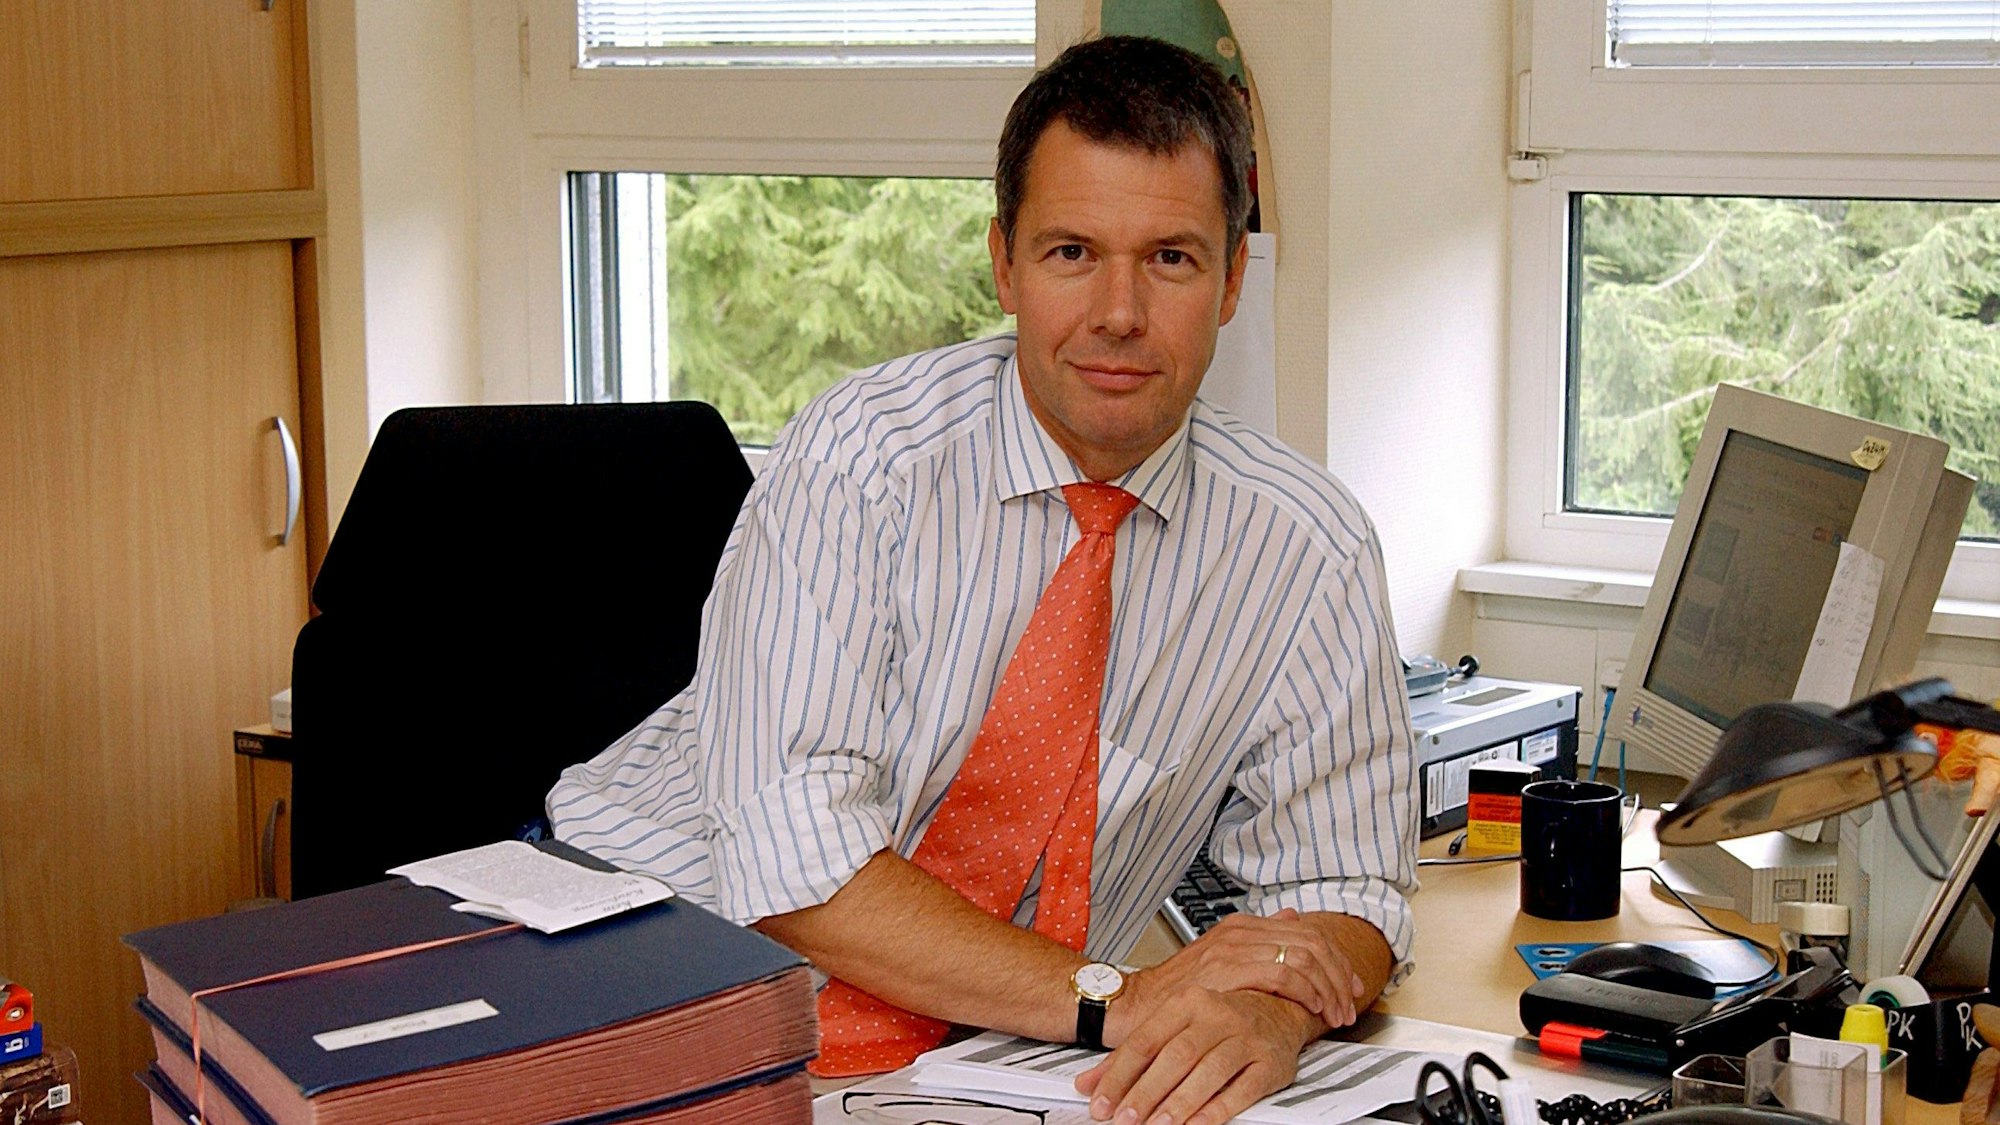 Peter Kloeppel, seit dem 1. November 2004 neuer Chefredakteur von RTL und weiterhin Anchorman der Nachrichtensendung „RTL aktuell“, am 12. August 2004 an seinem Schreibtisch in der Nachrichtenredaktion des Privatsenders in Köln.